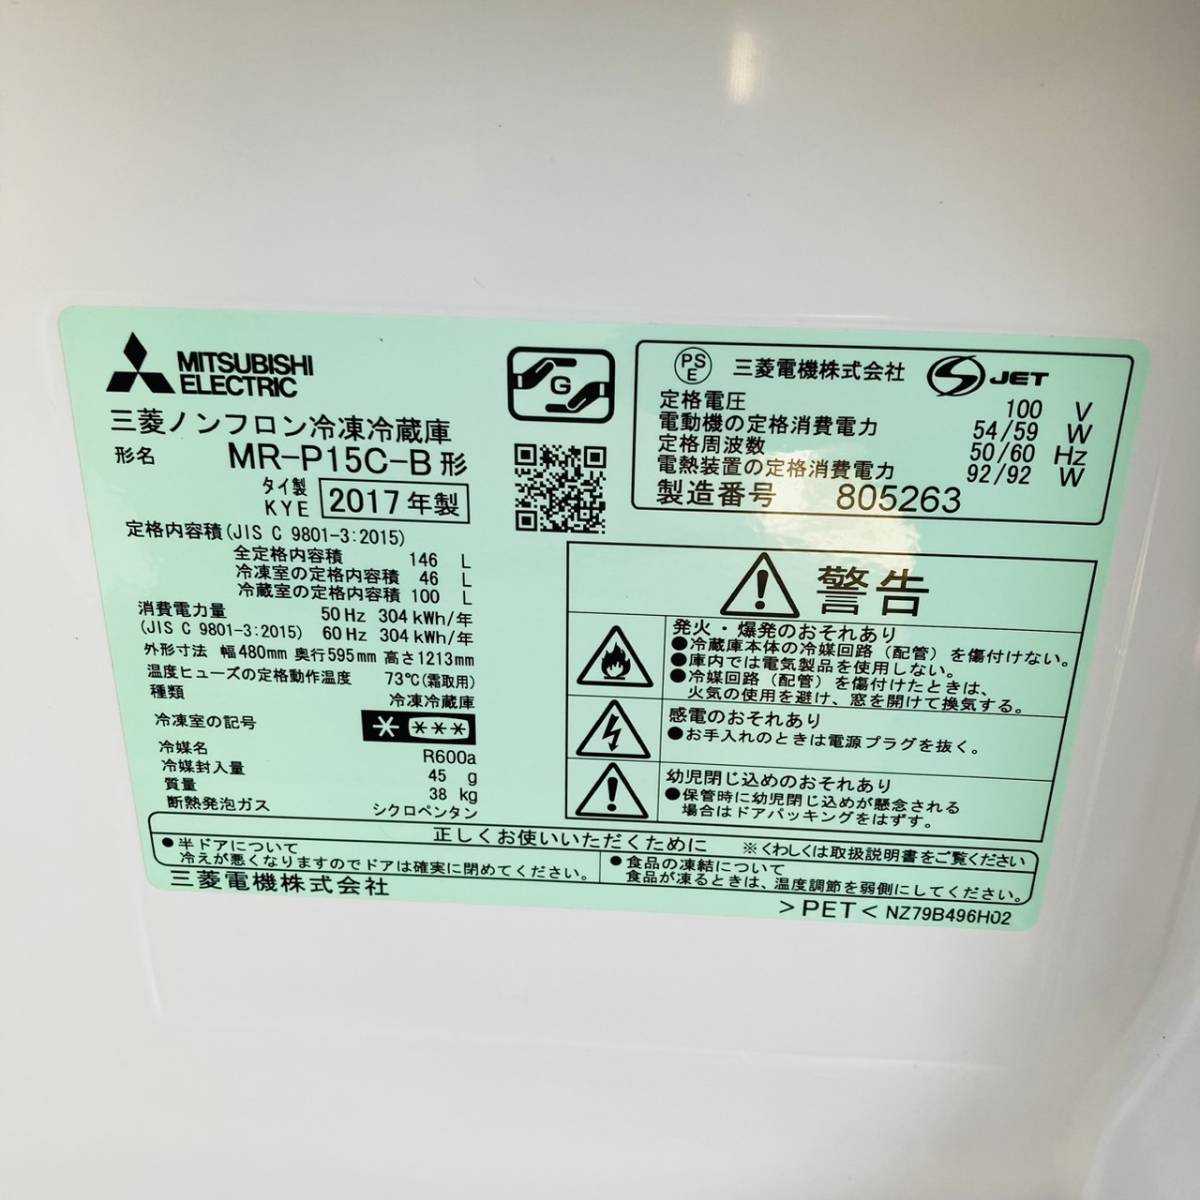  送料無料!!MITSUBISHI 三菱 146L ノンフロン冷凍冷蔵庫 MR-P15C-B形 動作品◇2017年製/YM115-31_画像6